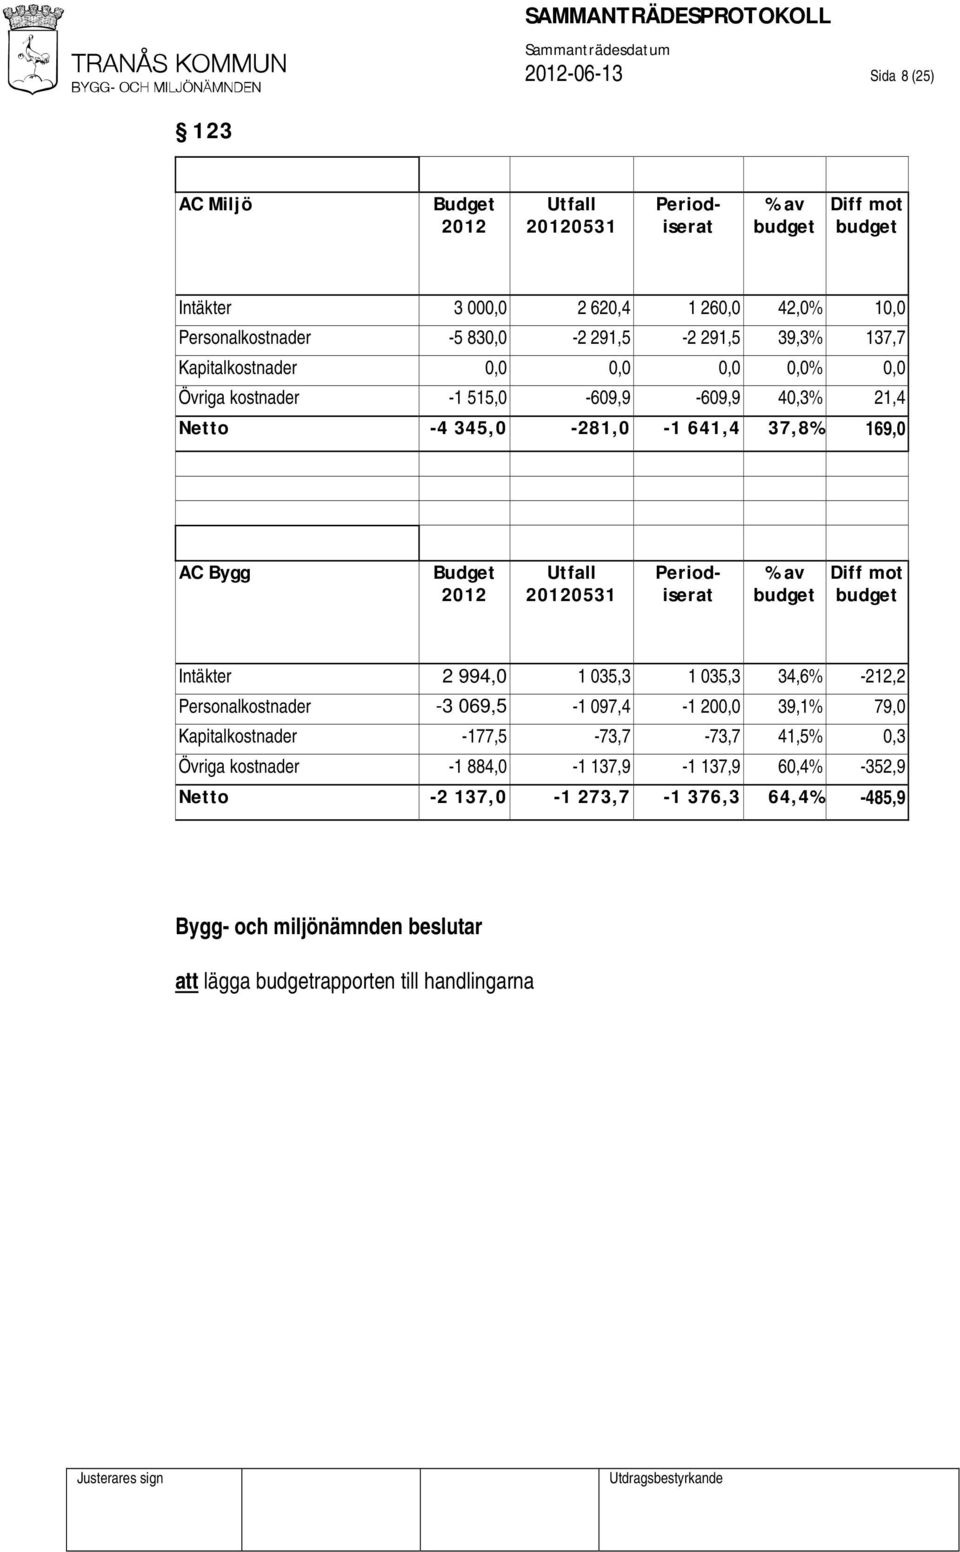 Budget 2012 Utfall 20120531 Periodiserat % av budget Diff mot budget Intäkter 2 994,0 1 035,3 1 035,3 34,6% -212,2 Personalkostnader -3 069,5-1 097,4-1 200,0 39,1% 79,0